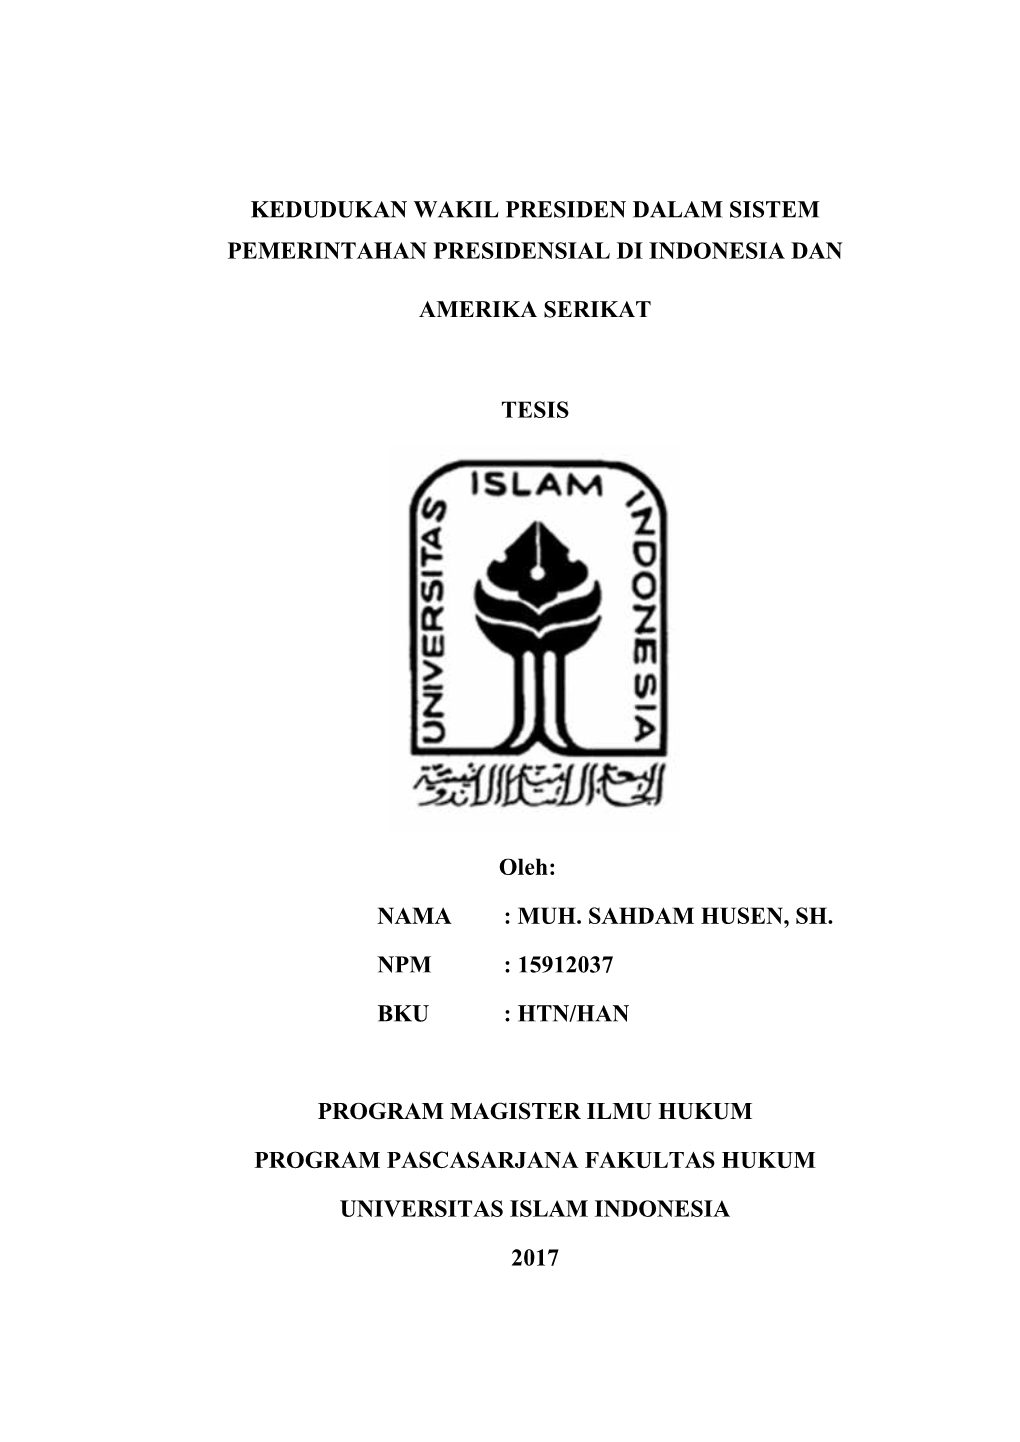 Kedudukan Wakil Presiden Dalam Sistem Pemerintahan Presidensial Di Indonesia Dan